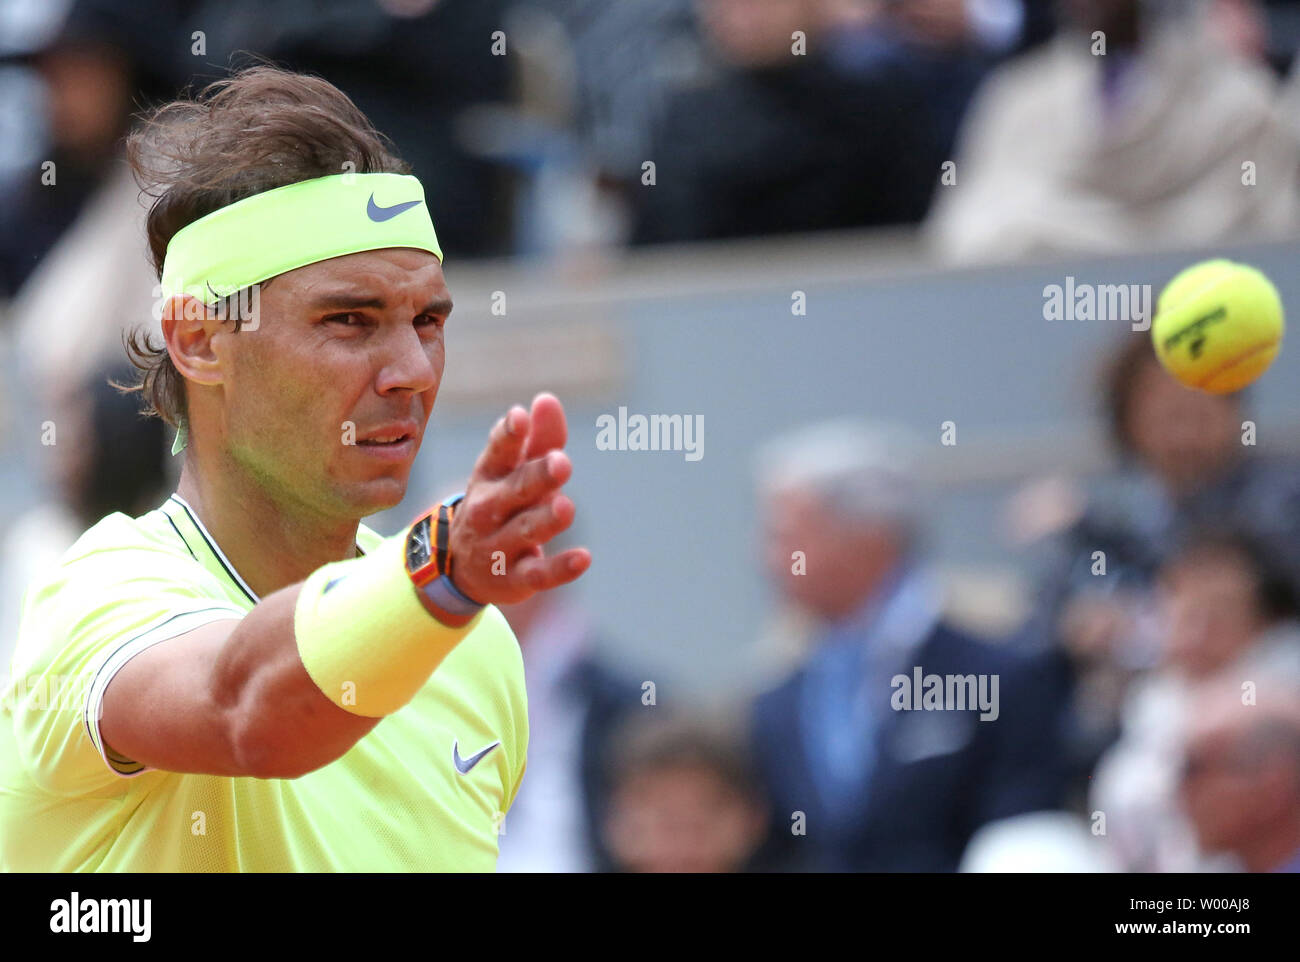 Les gestes de l'Espagne de Rafael Nadal lors de son Open de France demi-finales match contre Roger Federer de Suisse à Roland Garros à Paris le 7 juin 2019. Nadal bat Federer 6-3, 6-4, 6-2) pour passer à la finale. Photo de David Silpa/UPI Banque D'Images